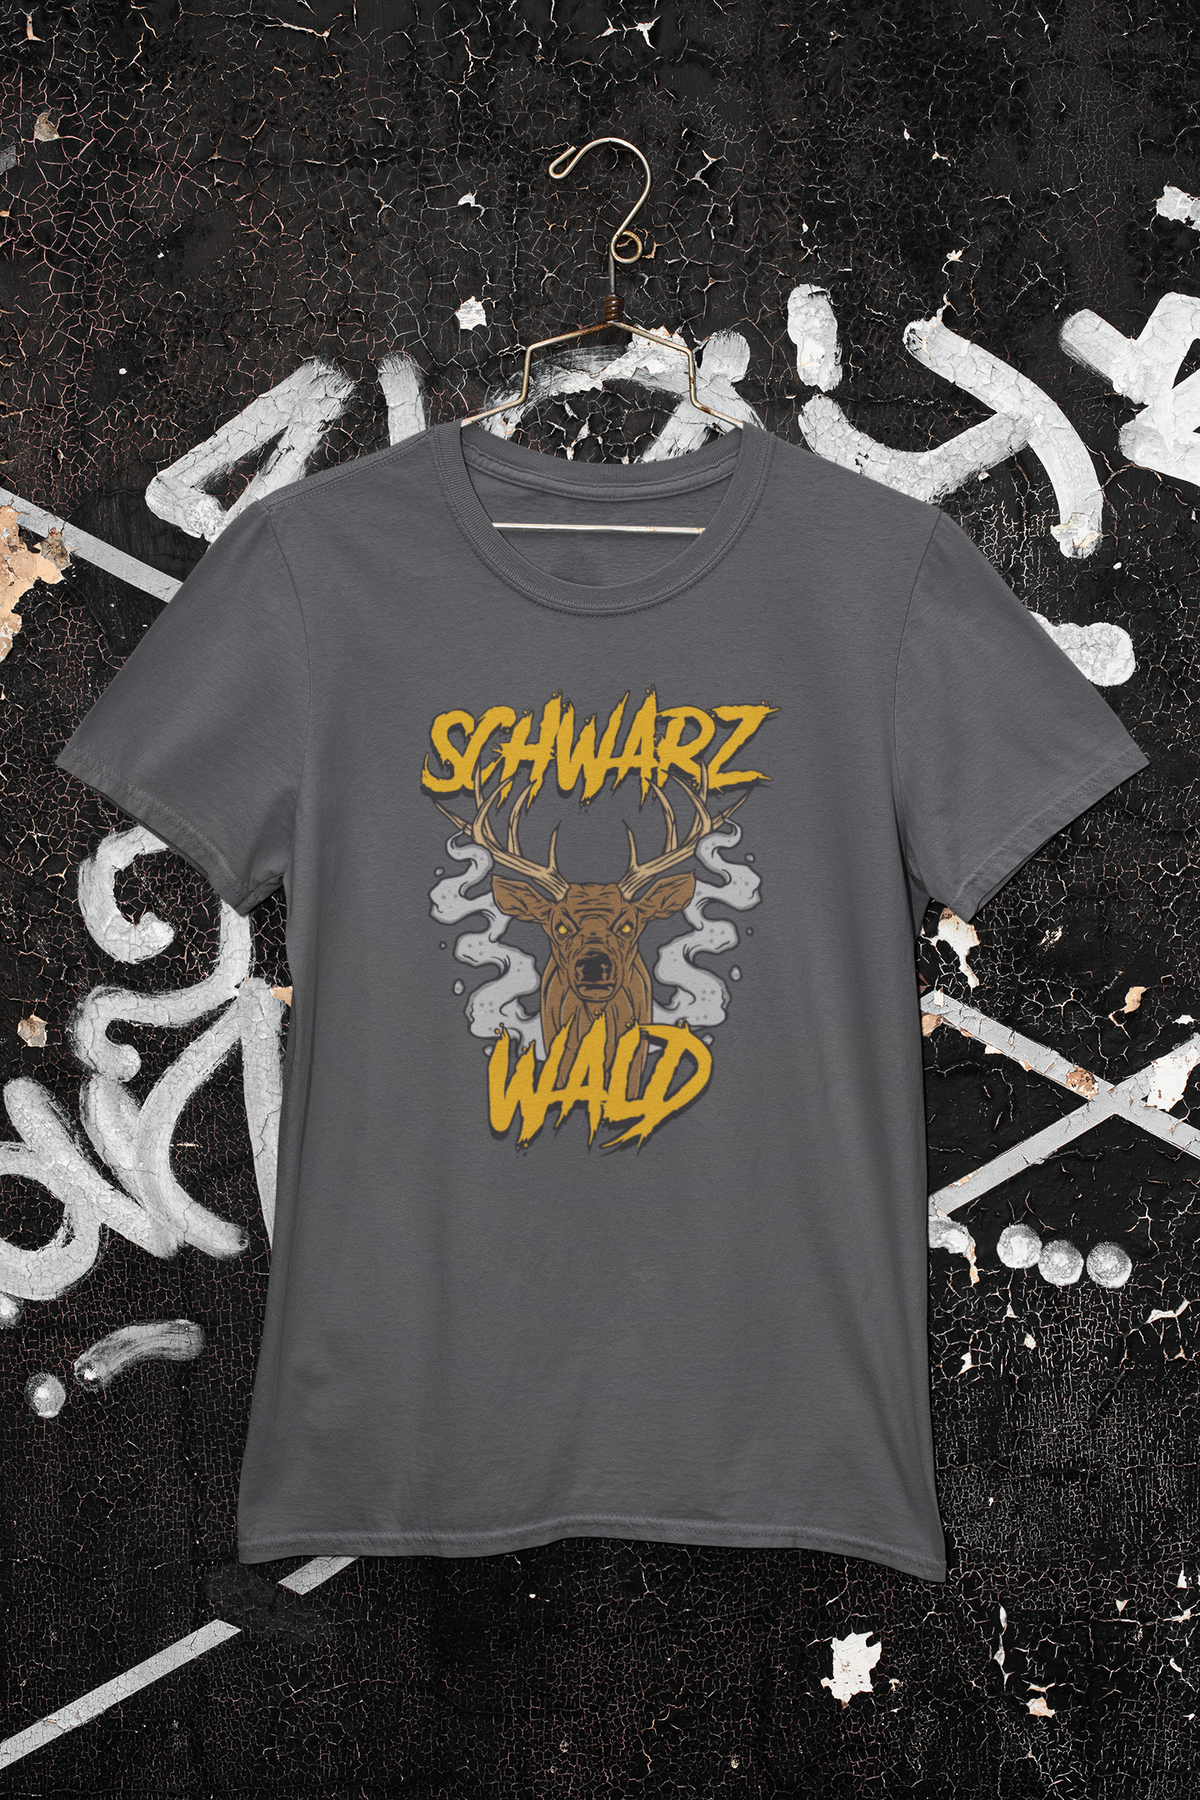 T-Shirt "Schwarzwald"